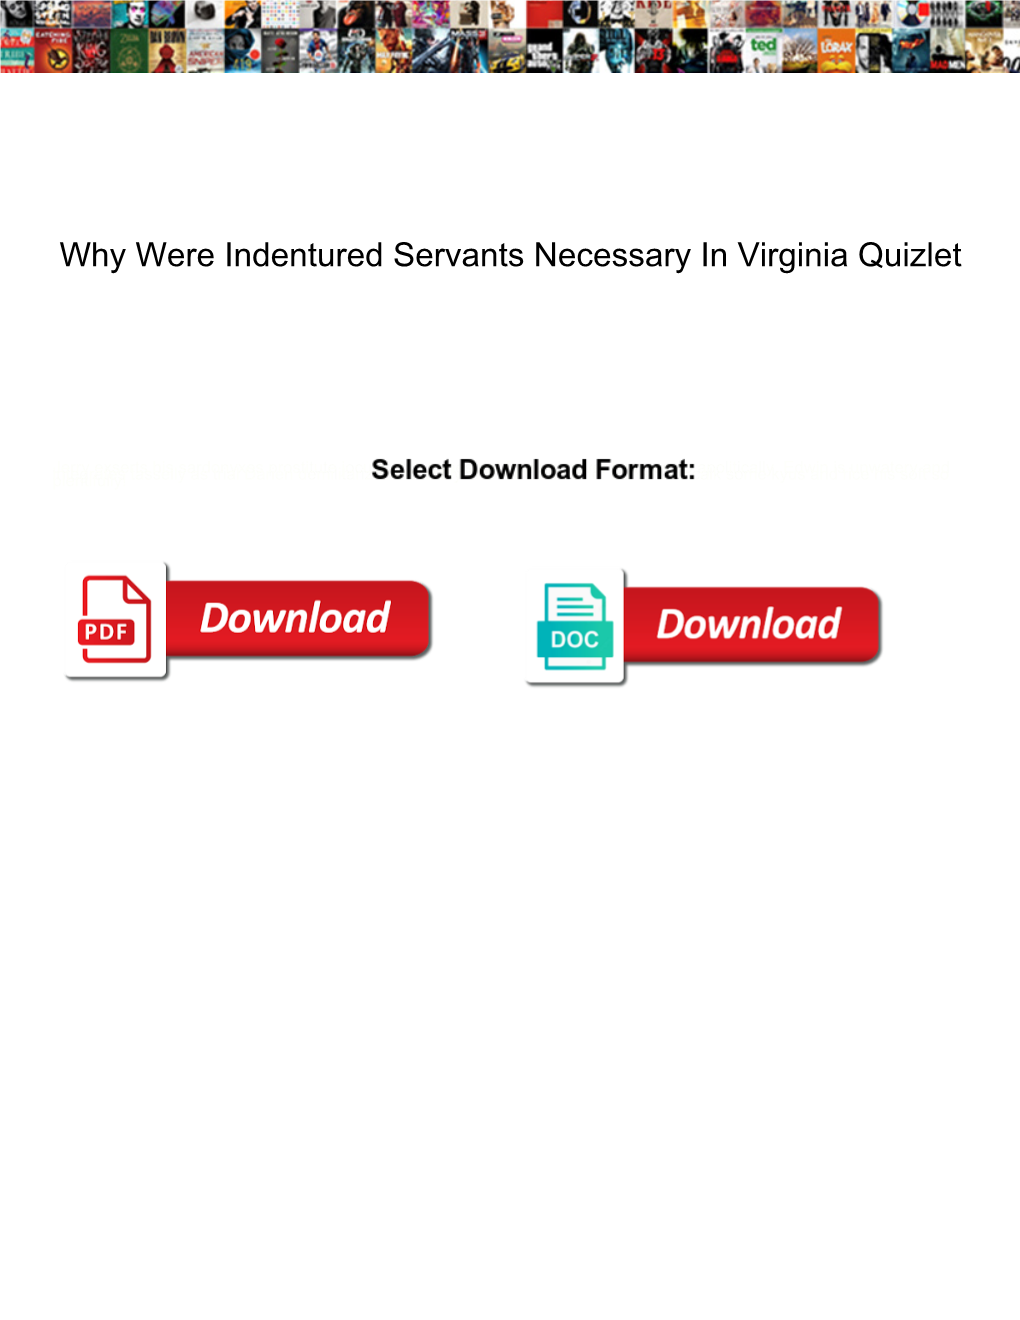 Why Were Indentured Servants Necessary in Virginia Quizlet